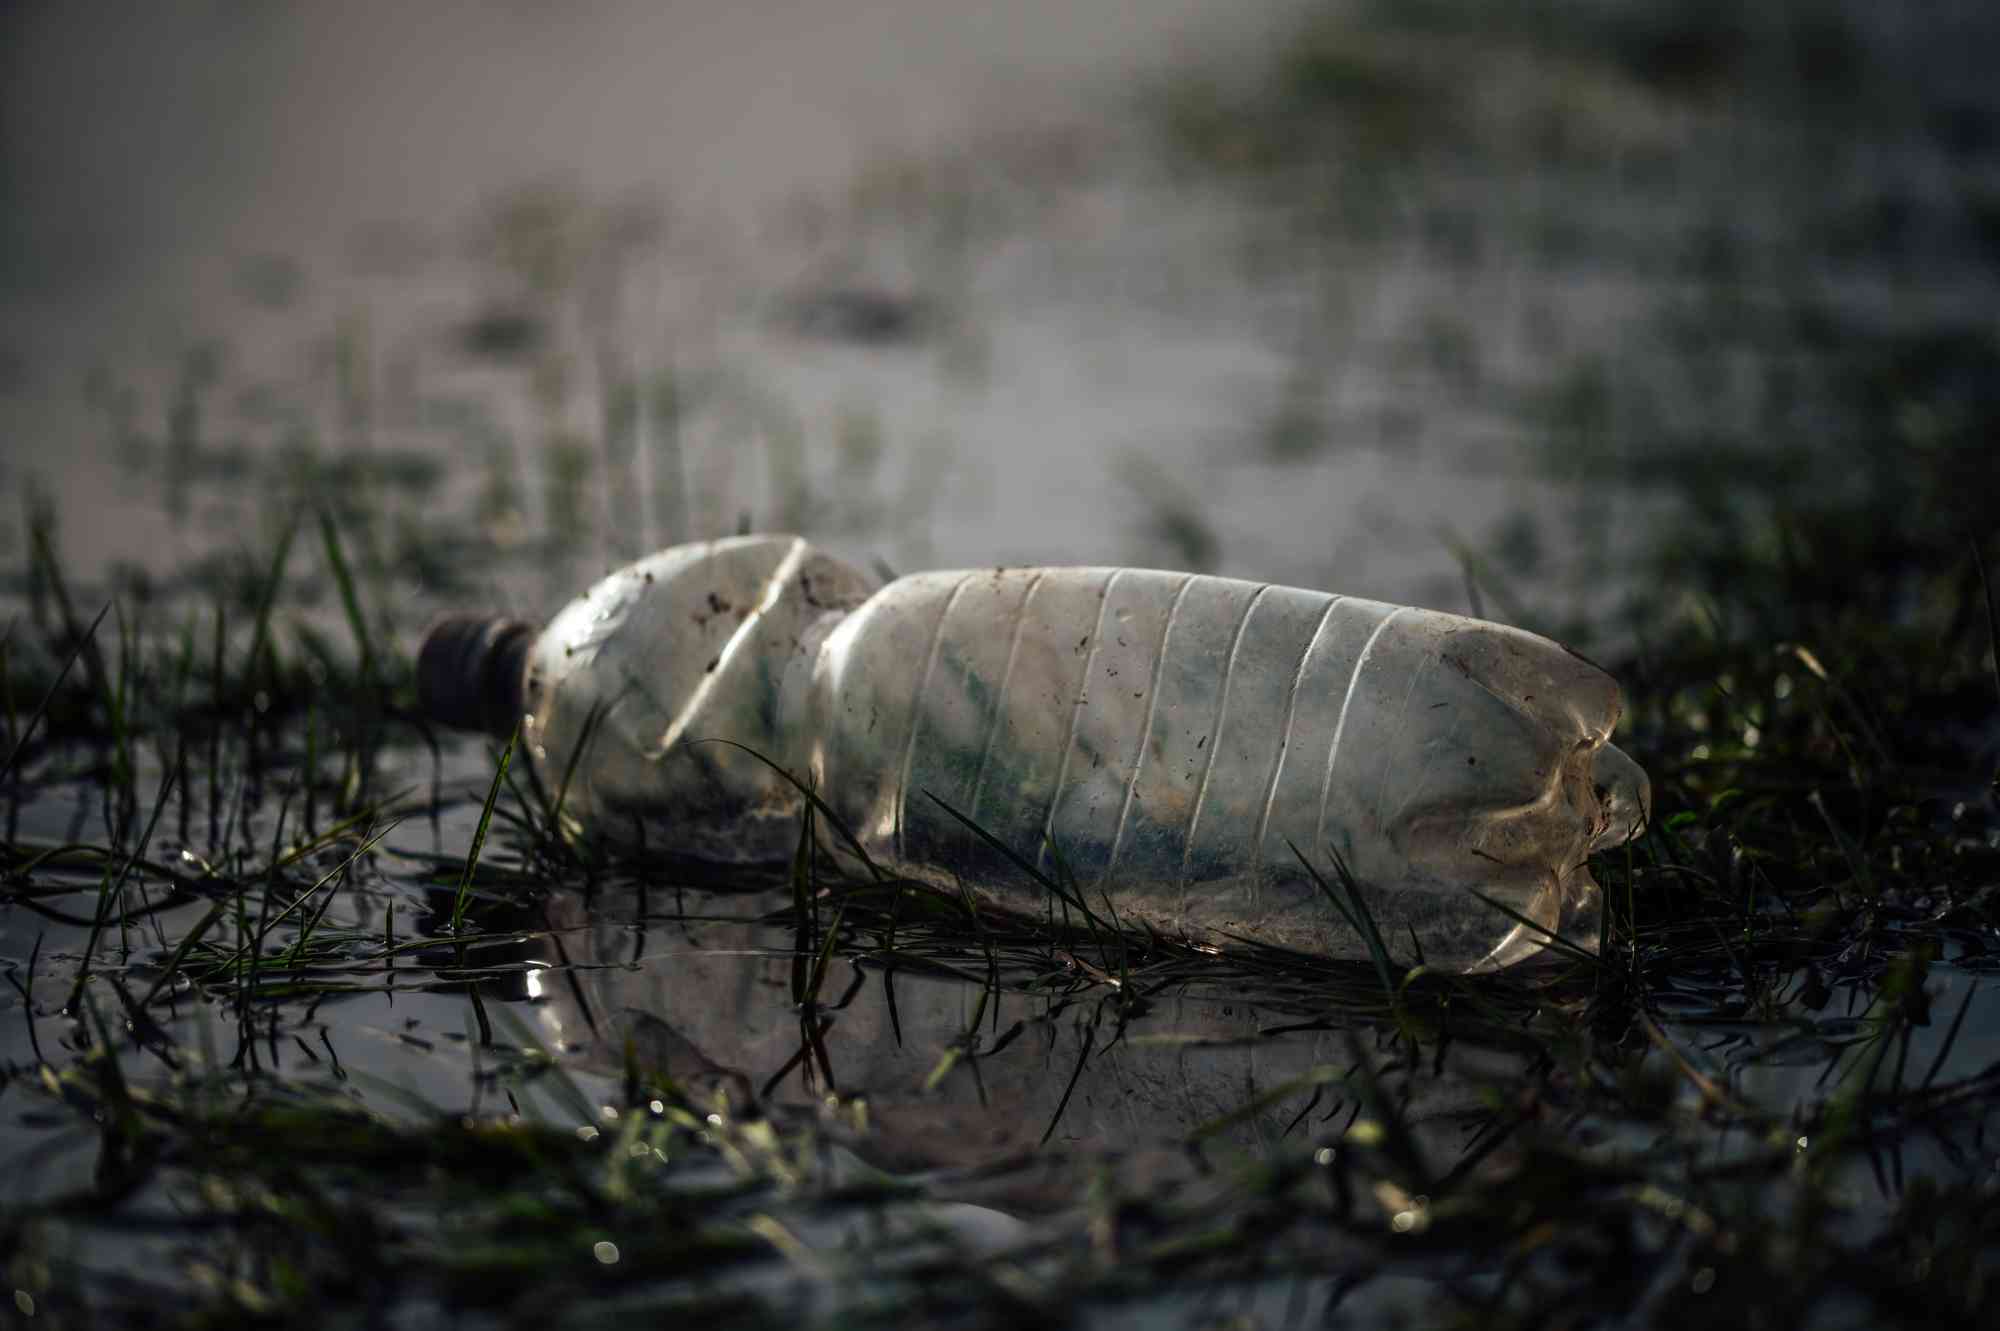 Plastic Water Bottle in River